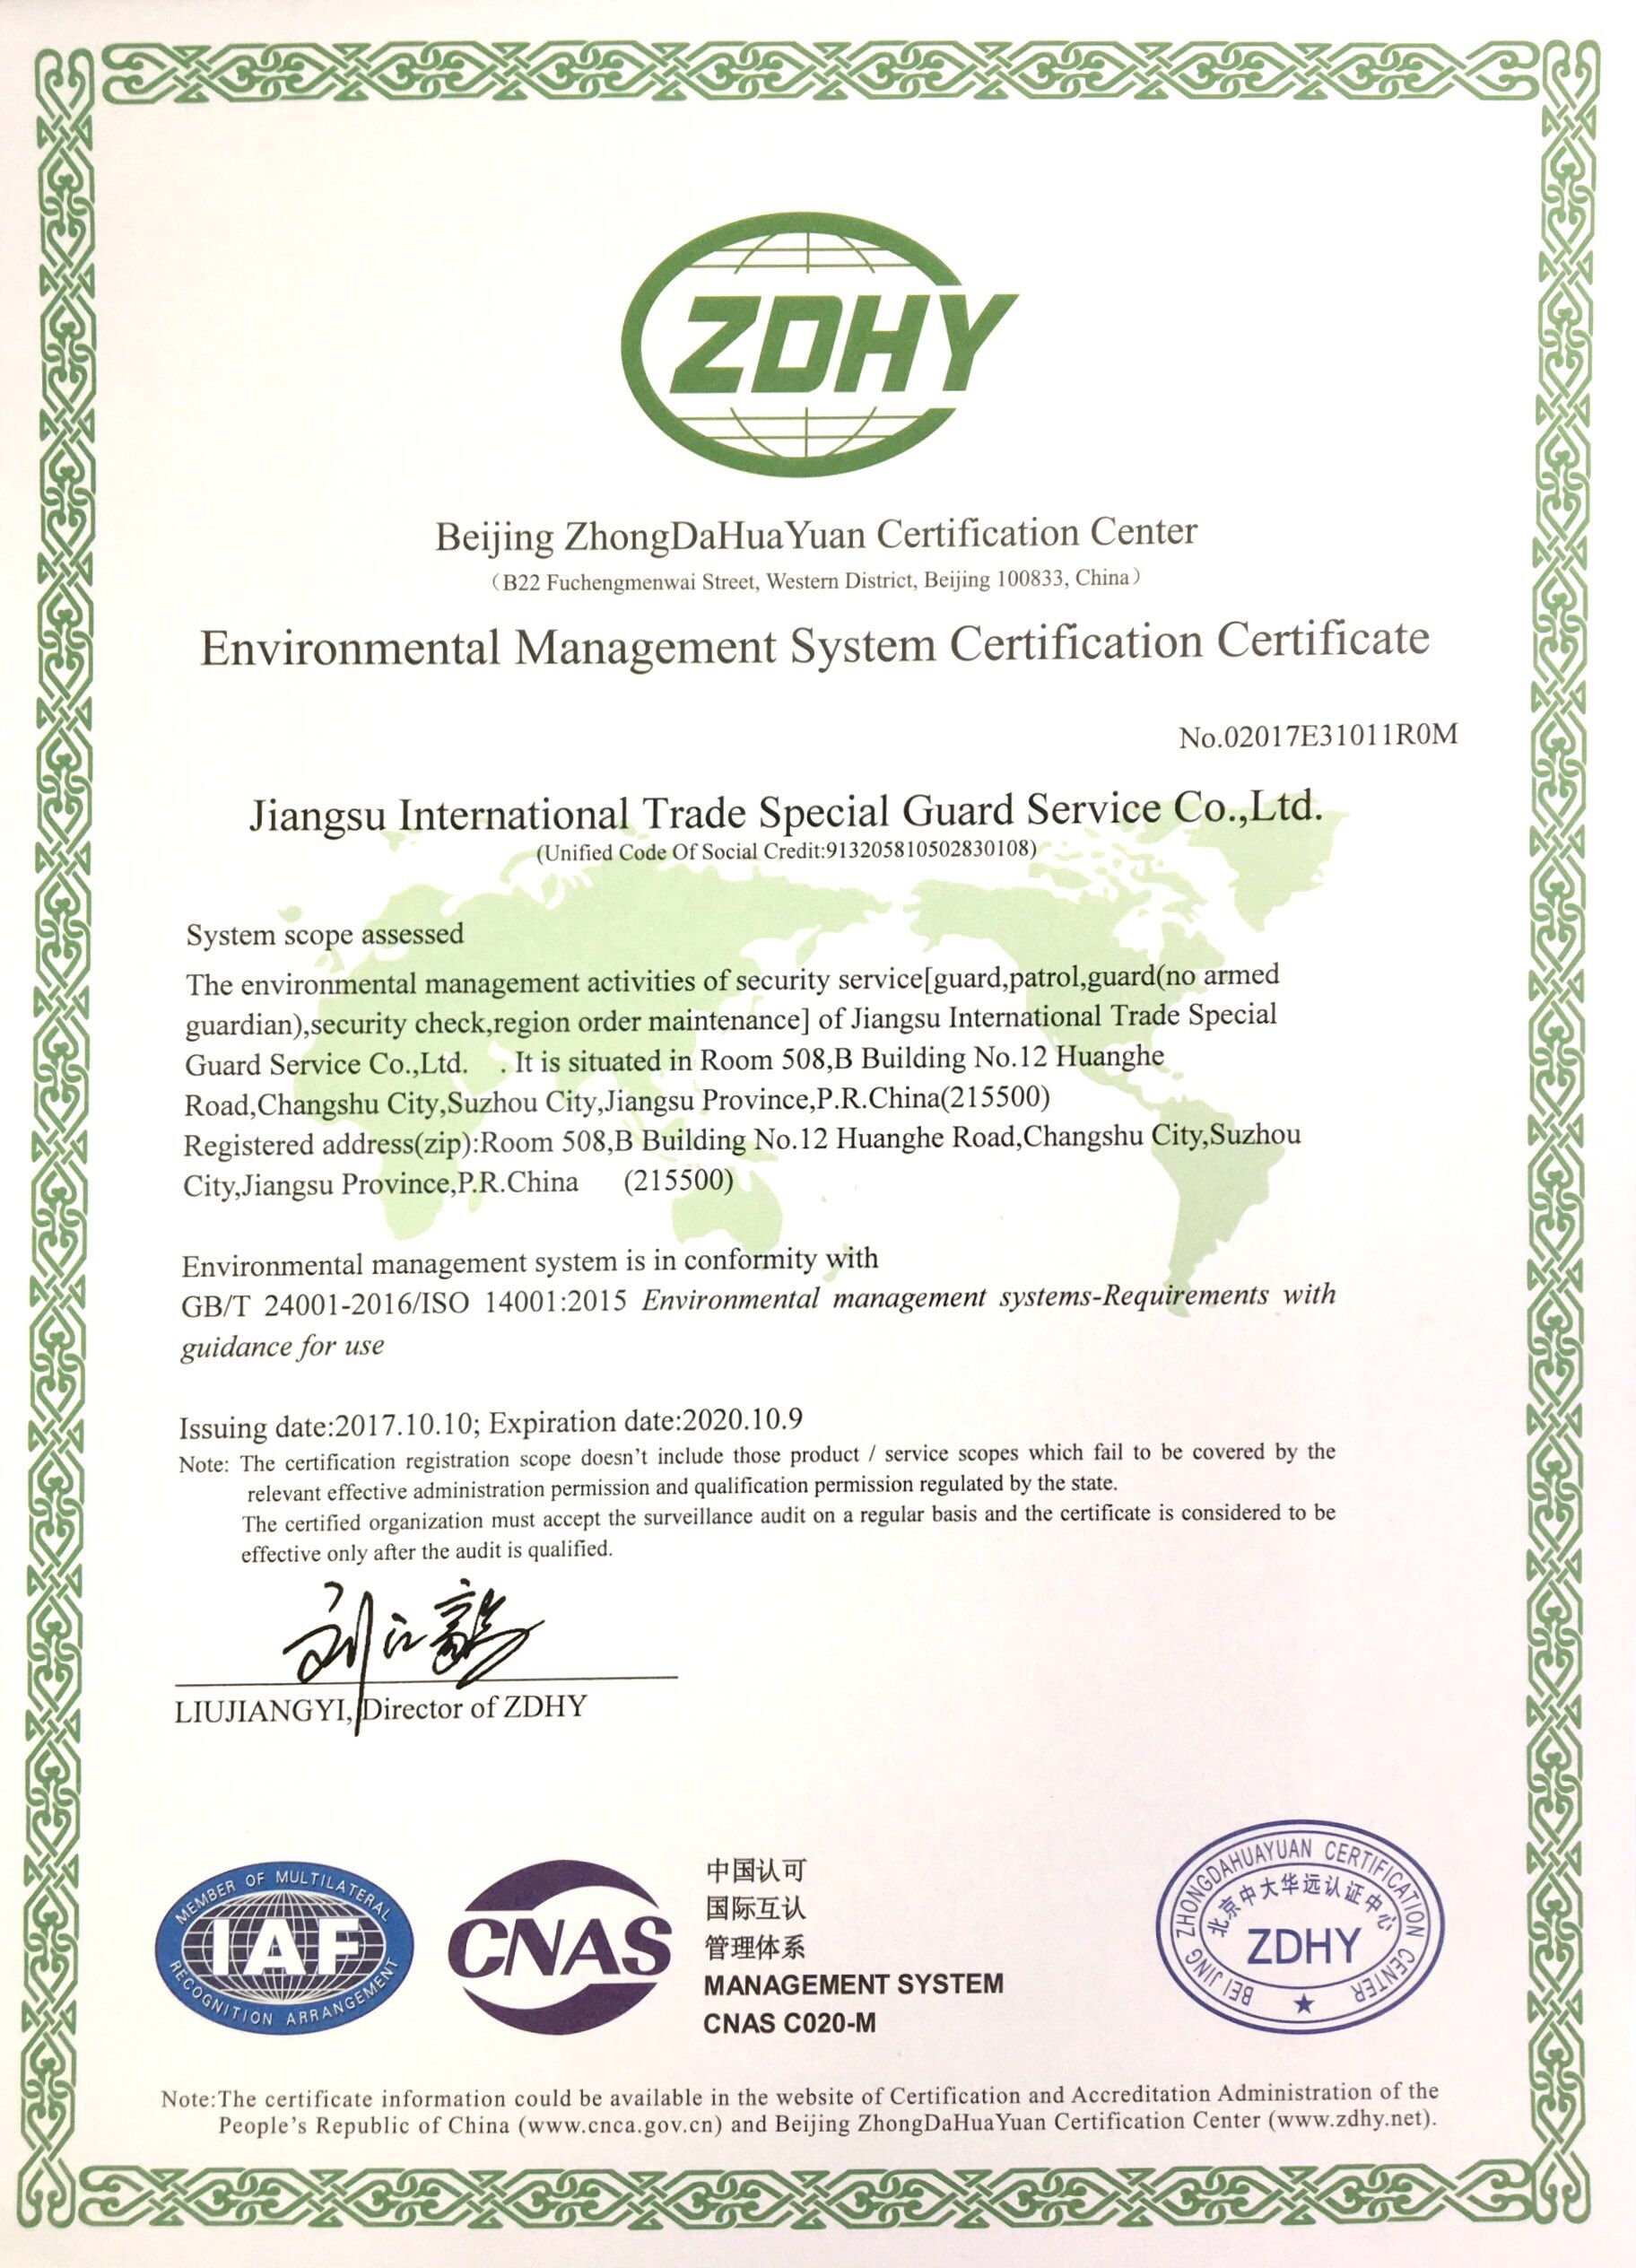 体系认证证书 ISO14001环境管理（英文）